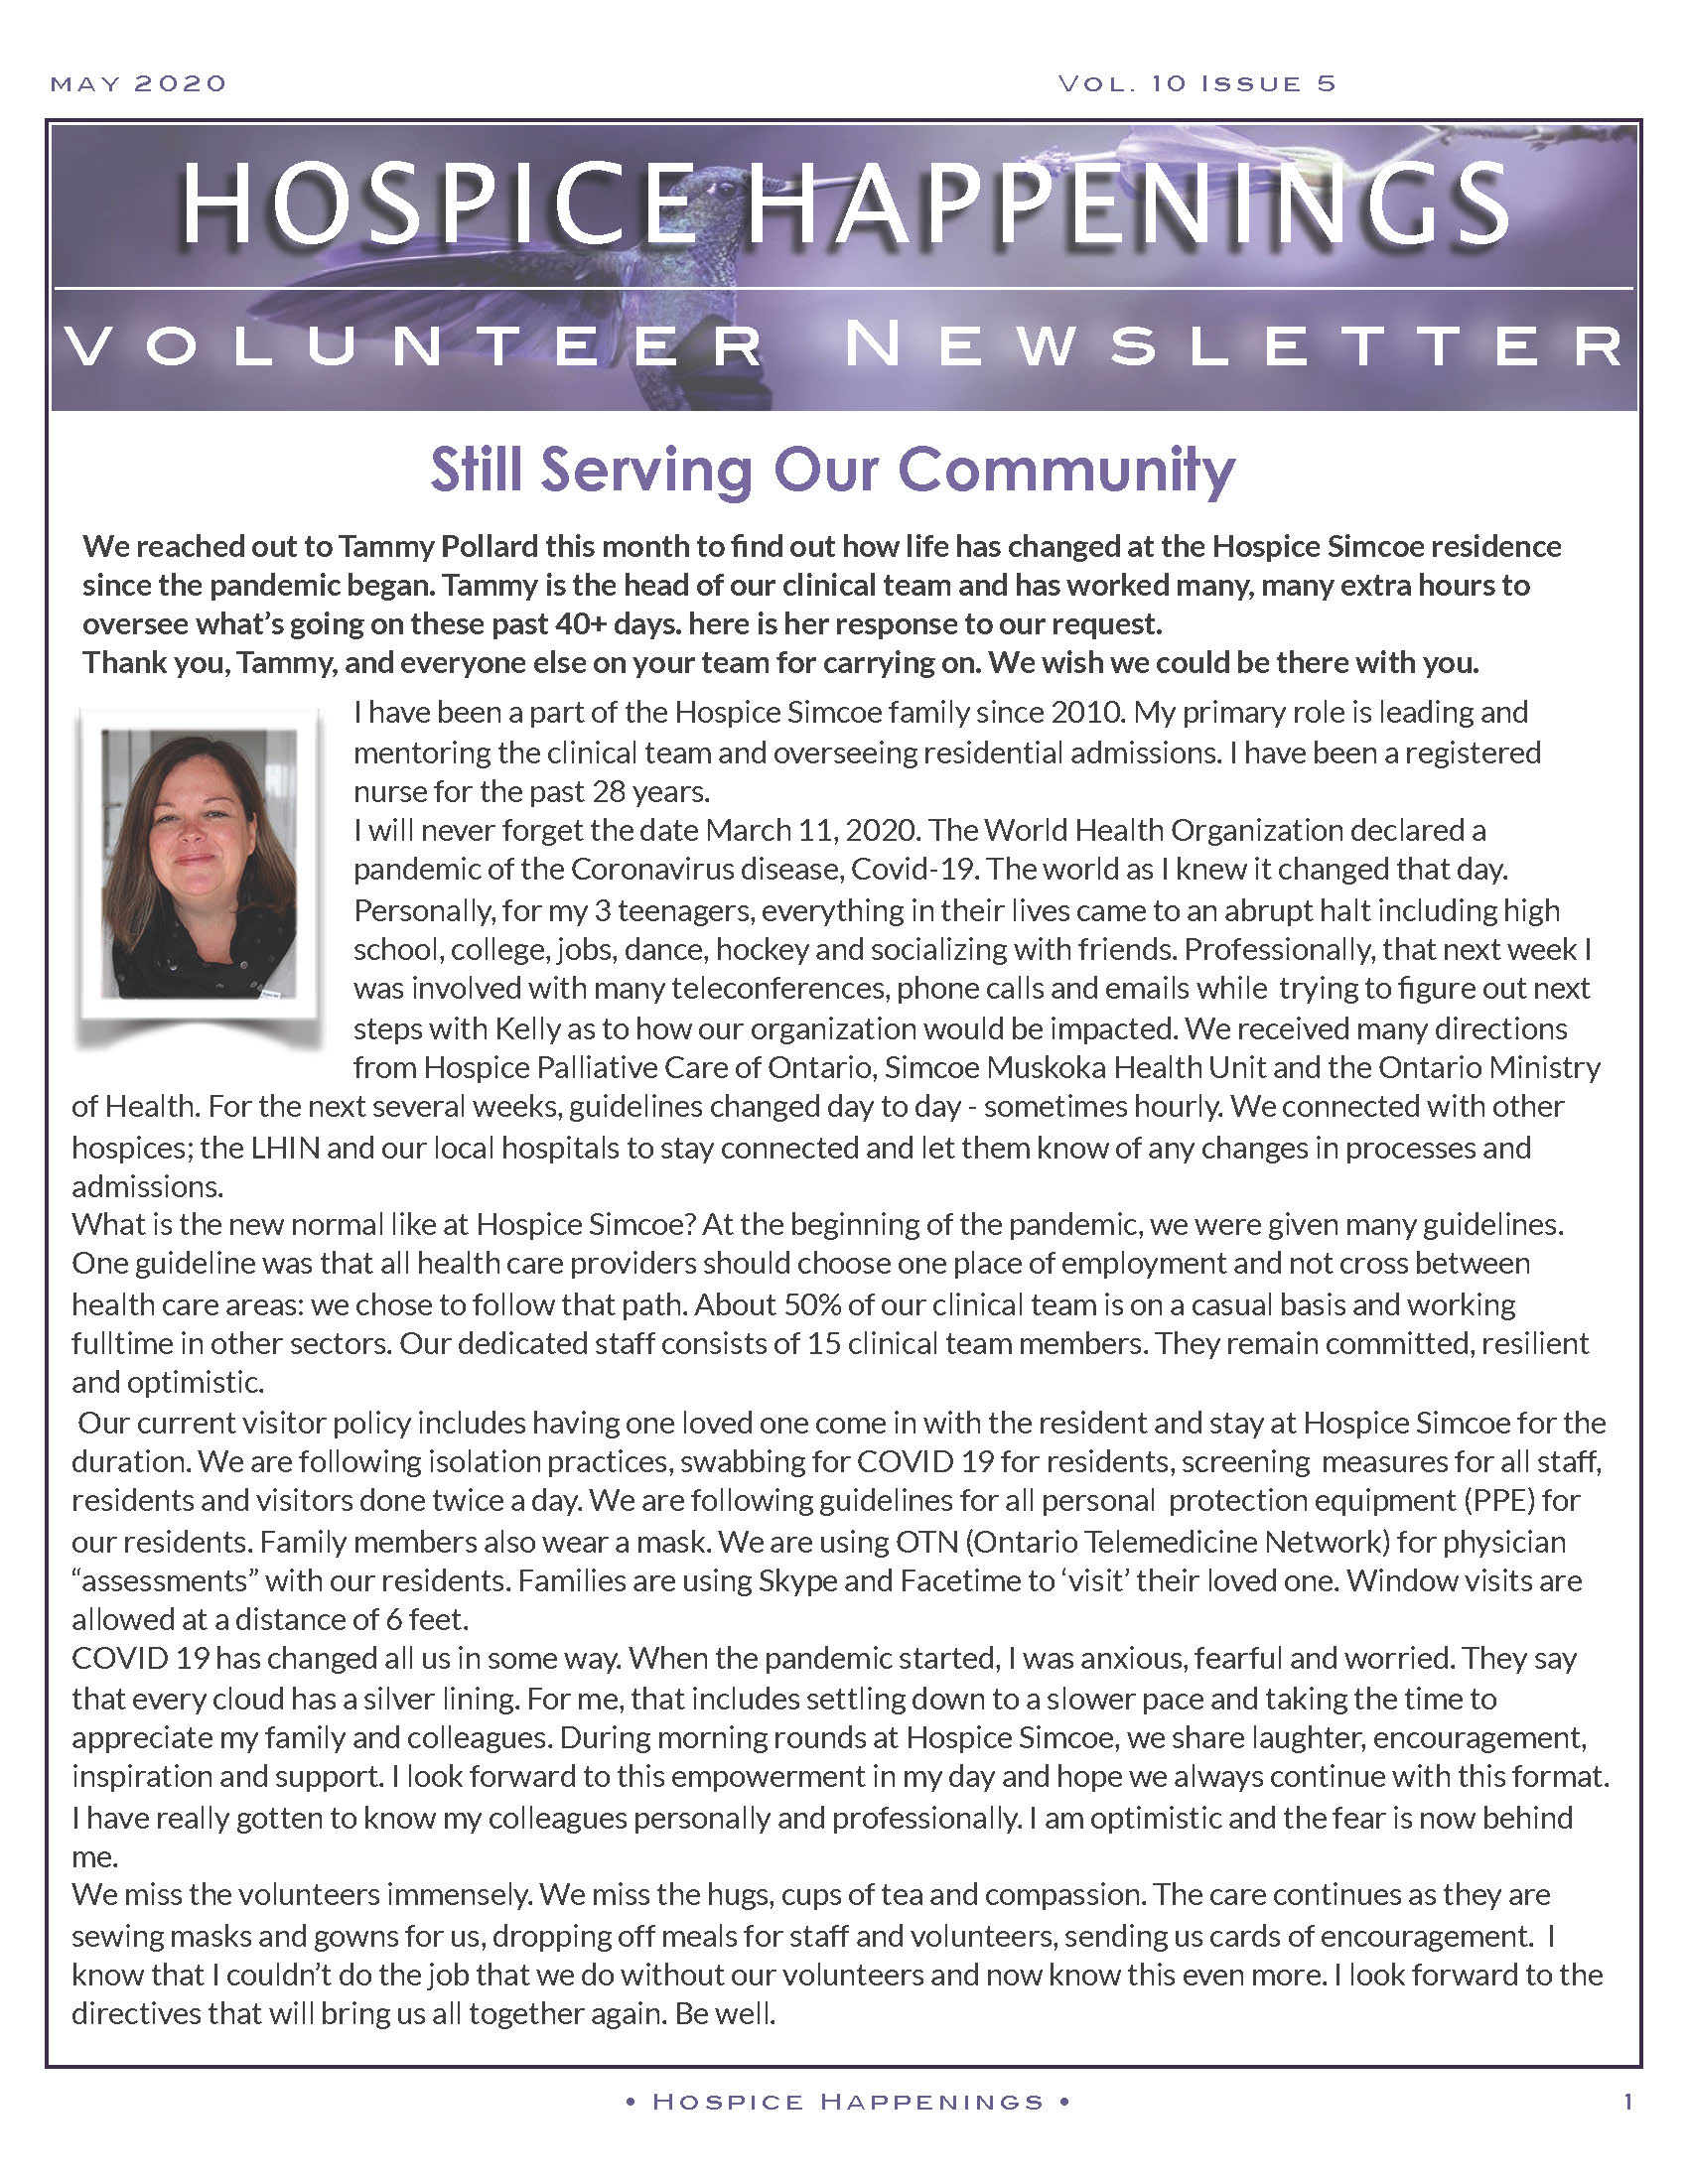 volunteer newsletter